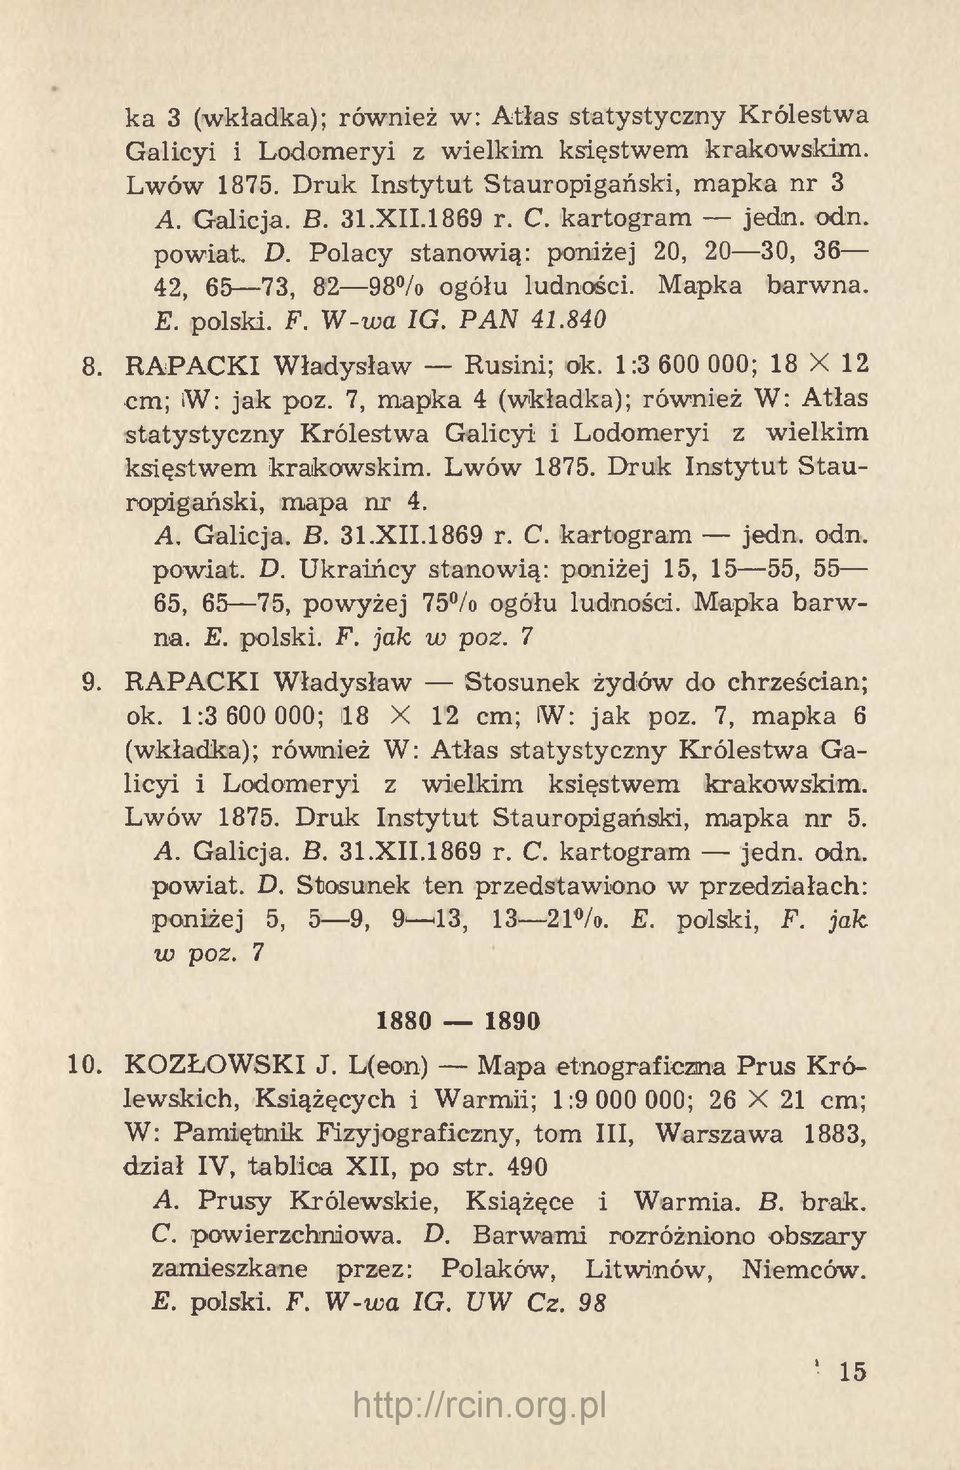 1:3 600 000; 18 X 12 cm; iw: jak poz. 7, mapka 4 (wkładka); również W: Atłas statystyczny Królestwa Galicyi i Lodomeryi z wielkim księstwem krakowskim. Lwów 1875.